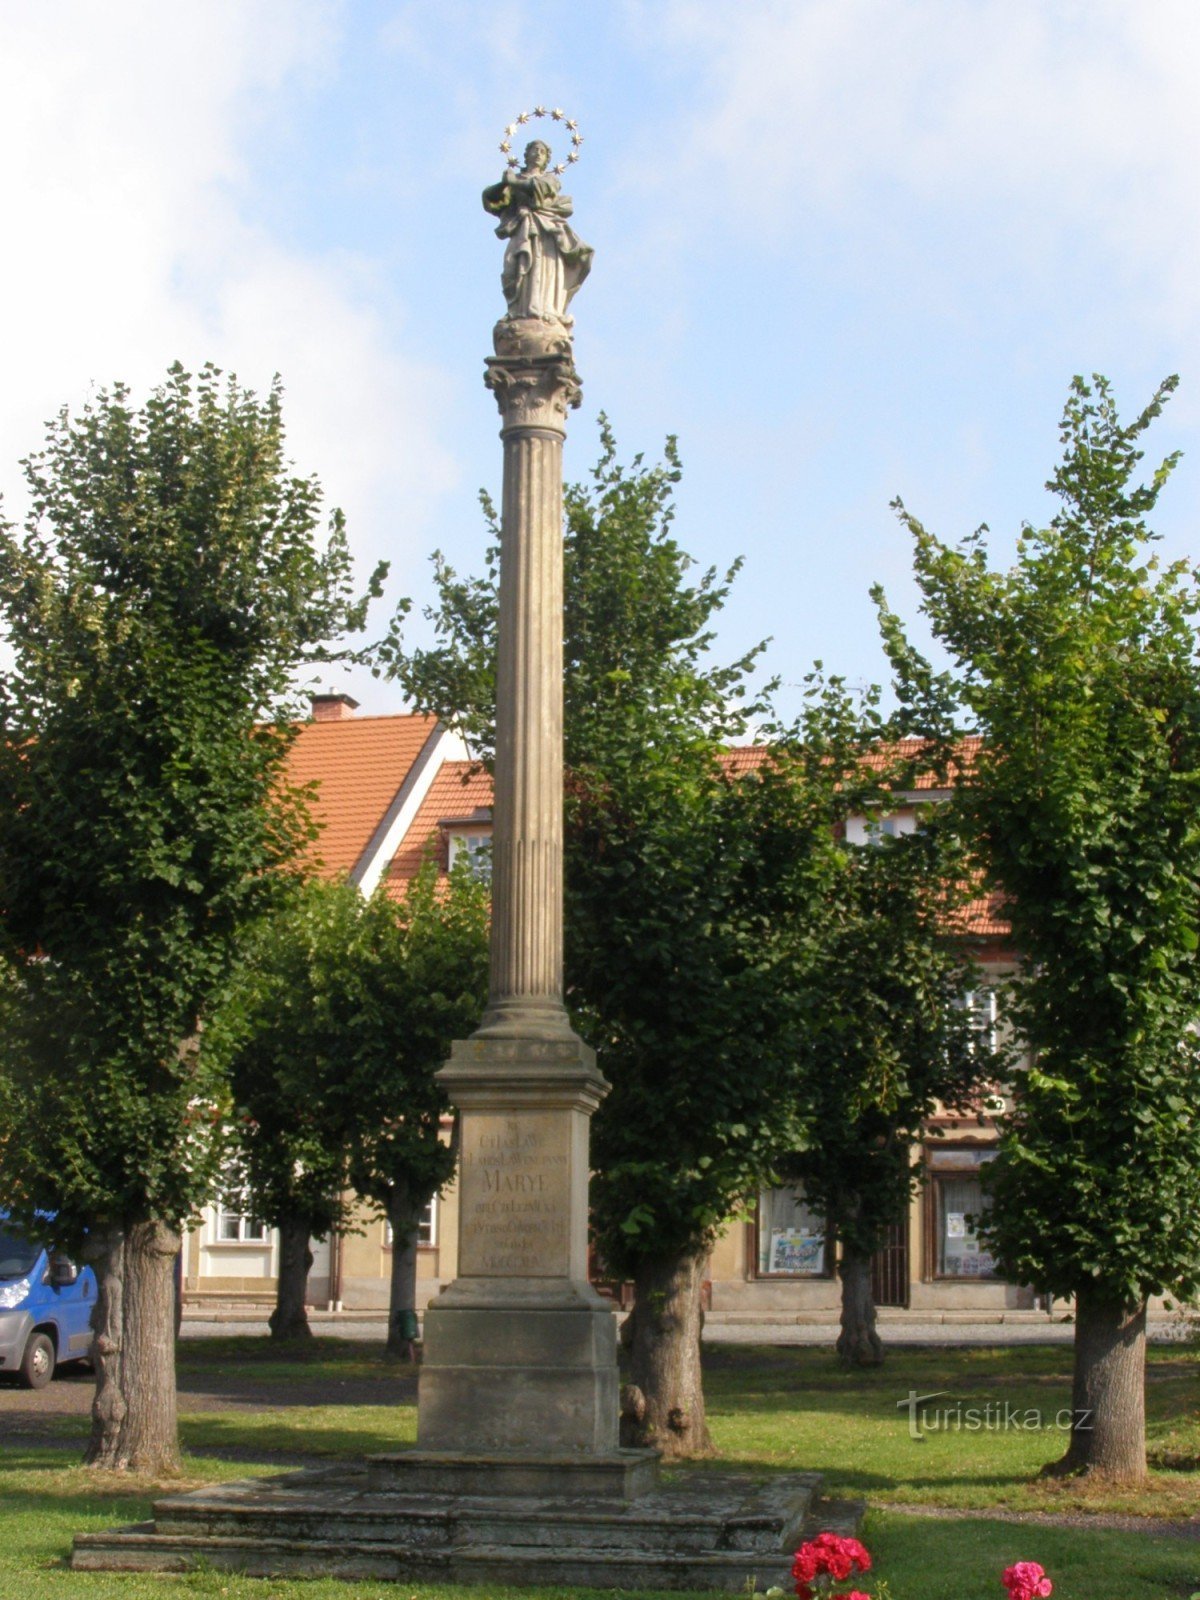 Ferrovia - náměstí Svobody, conjunto de monumentos